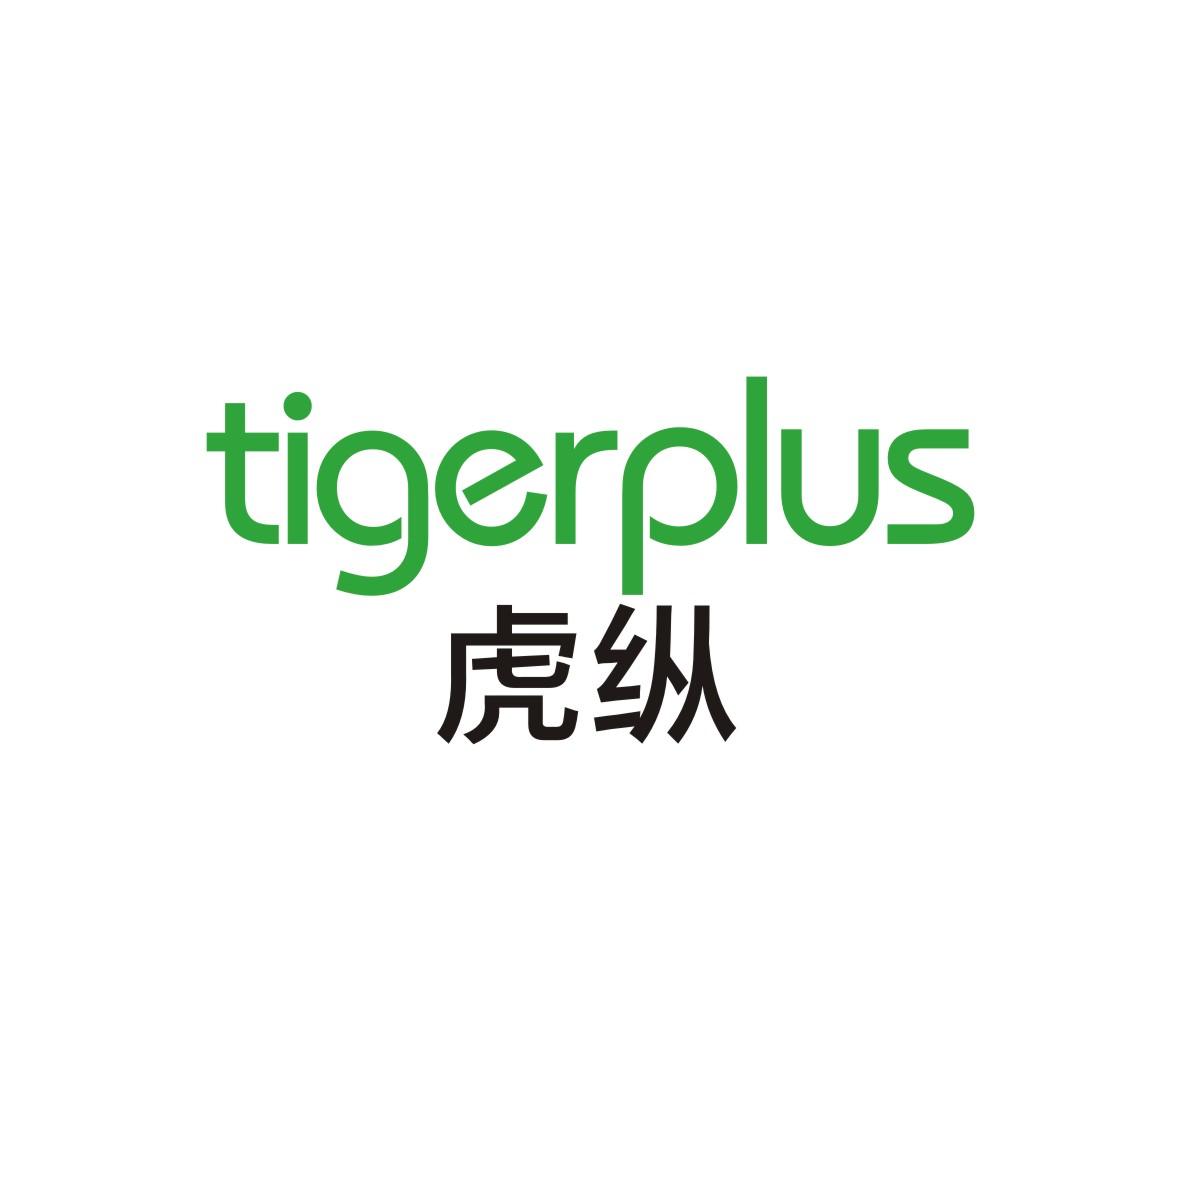 广州知麦网络科技有限公司商标虎纵 TIGERPLUS（28类）多少钱？